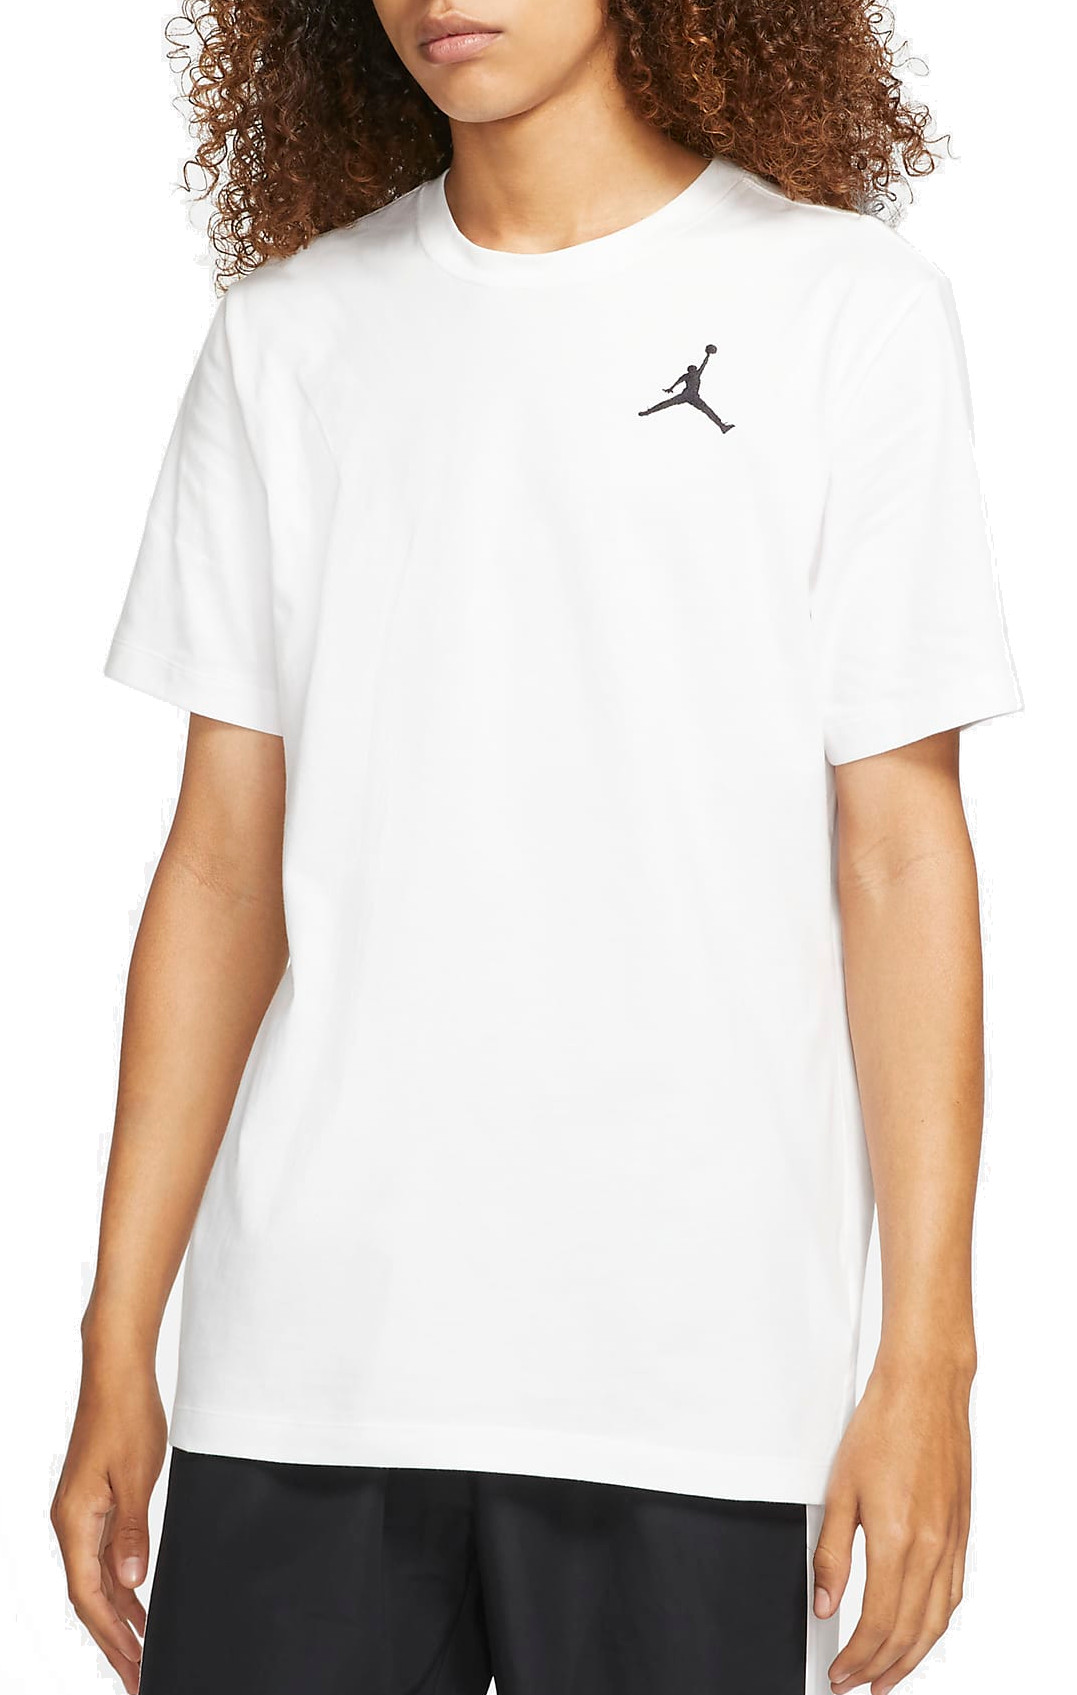 Тениска Jordan Jumpman Men s Short-Sleeve T-Shirt